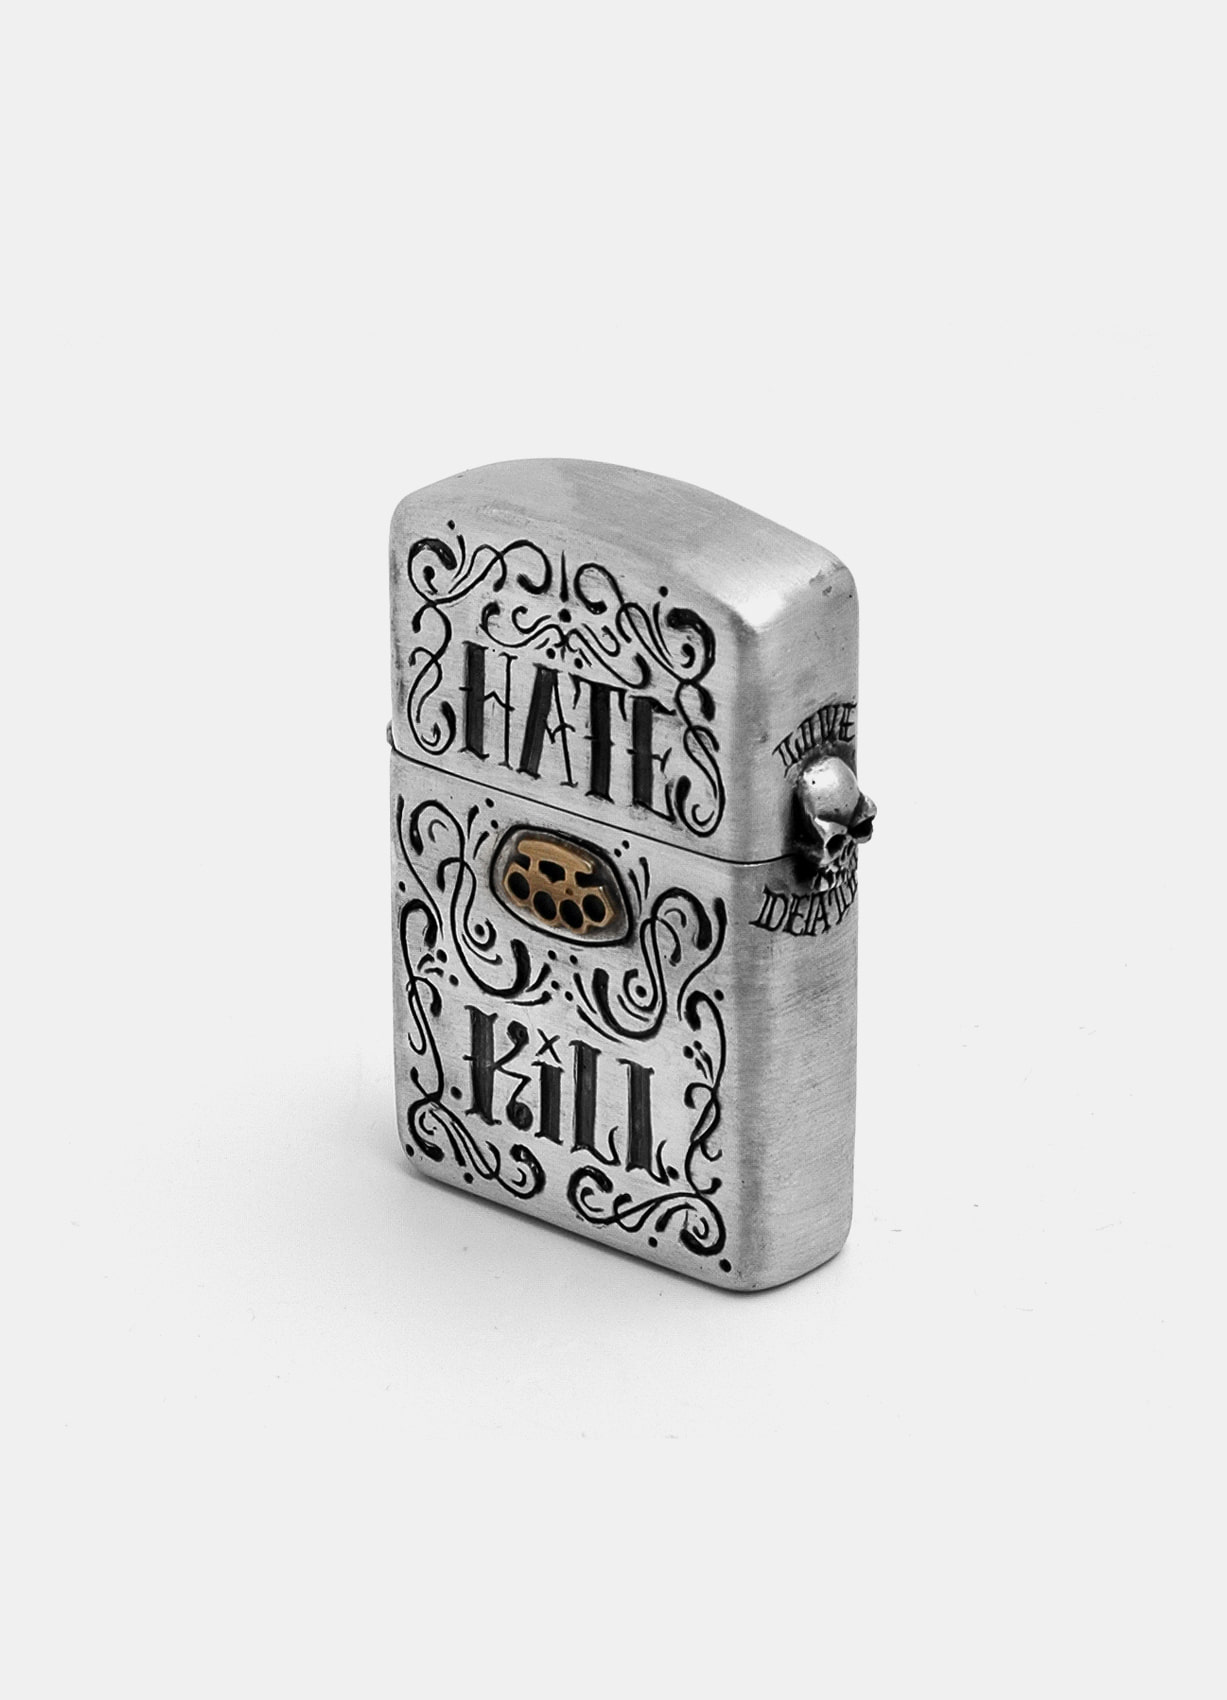 Hate&amp;Kill Zippo Lighter Case SCHC Ver silver